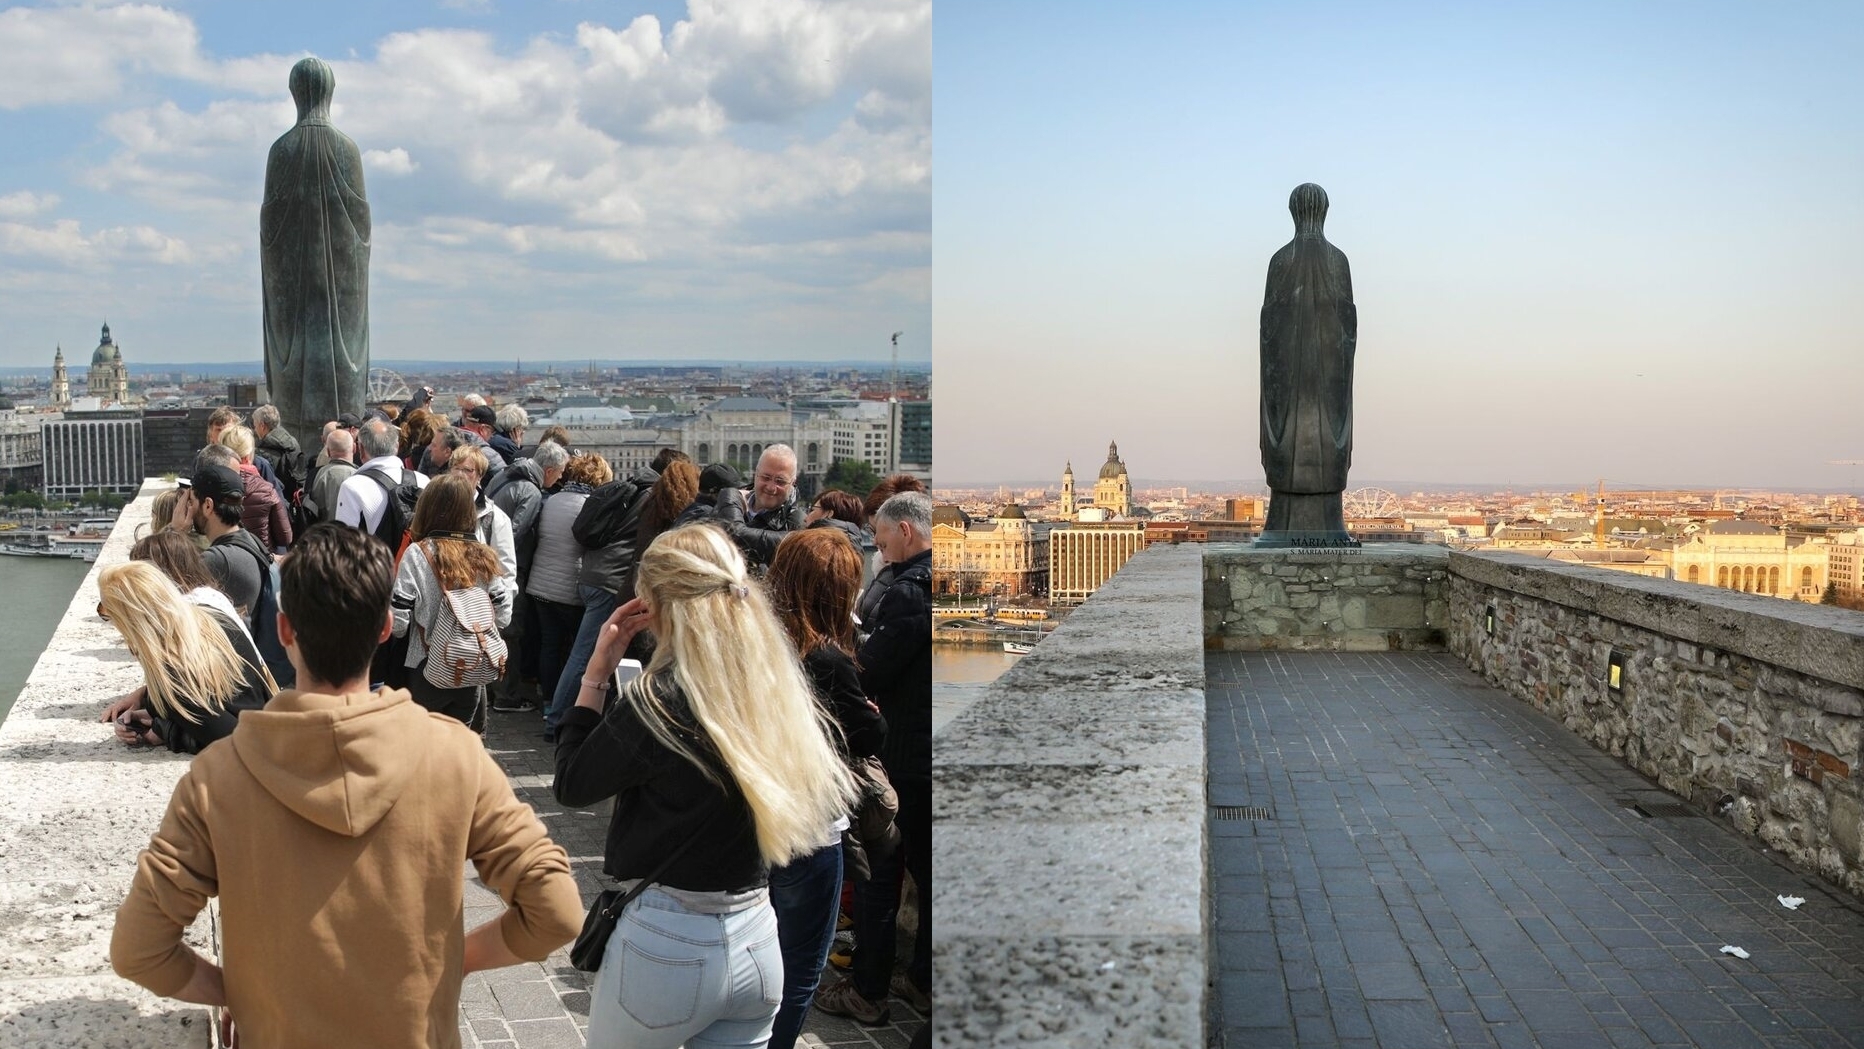 Képgaléria akkor és most – így fest a turistákkal teli és az elnéptelenedett Budapest